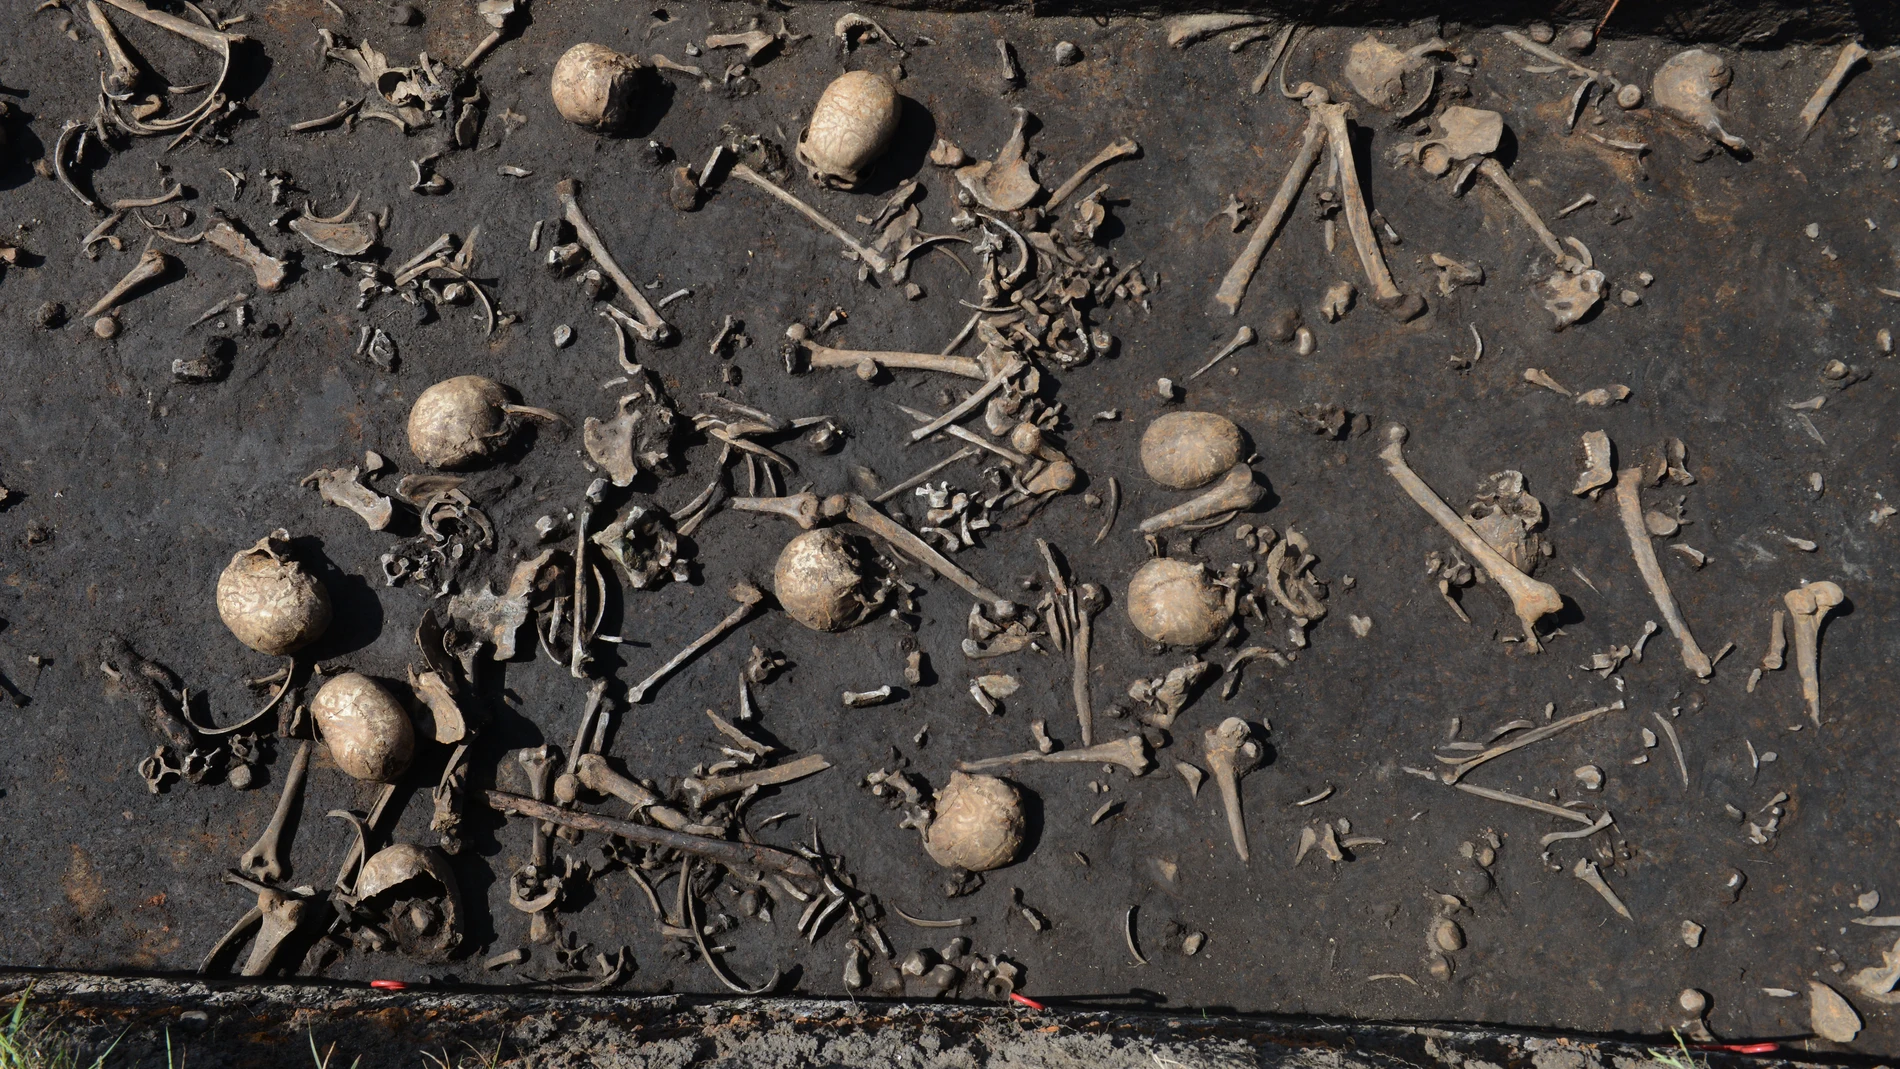 Restos humanos de caídos en combate, datados hacia 1250 a. C., documentados en el conjunto arqueológico del valle del río Tollense (Alemania)